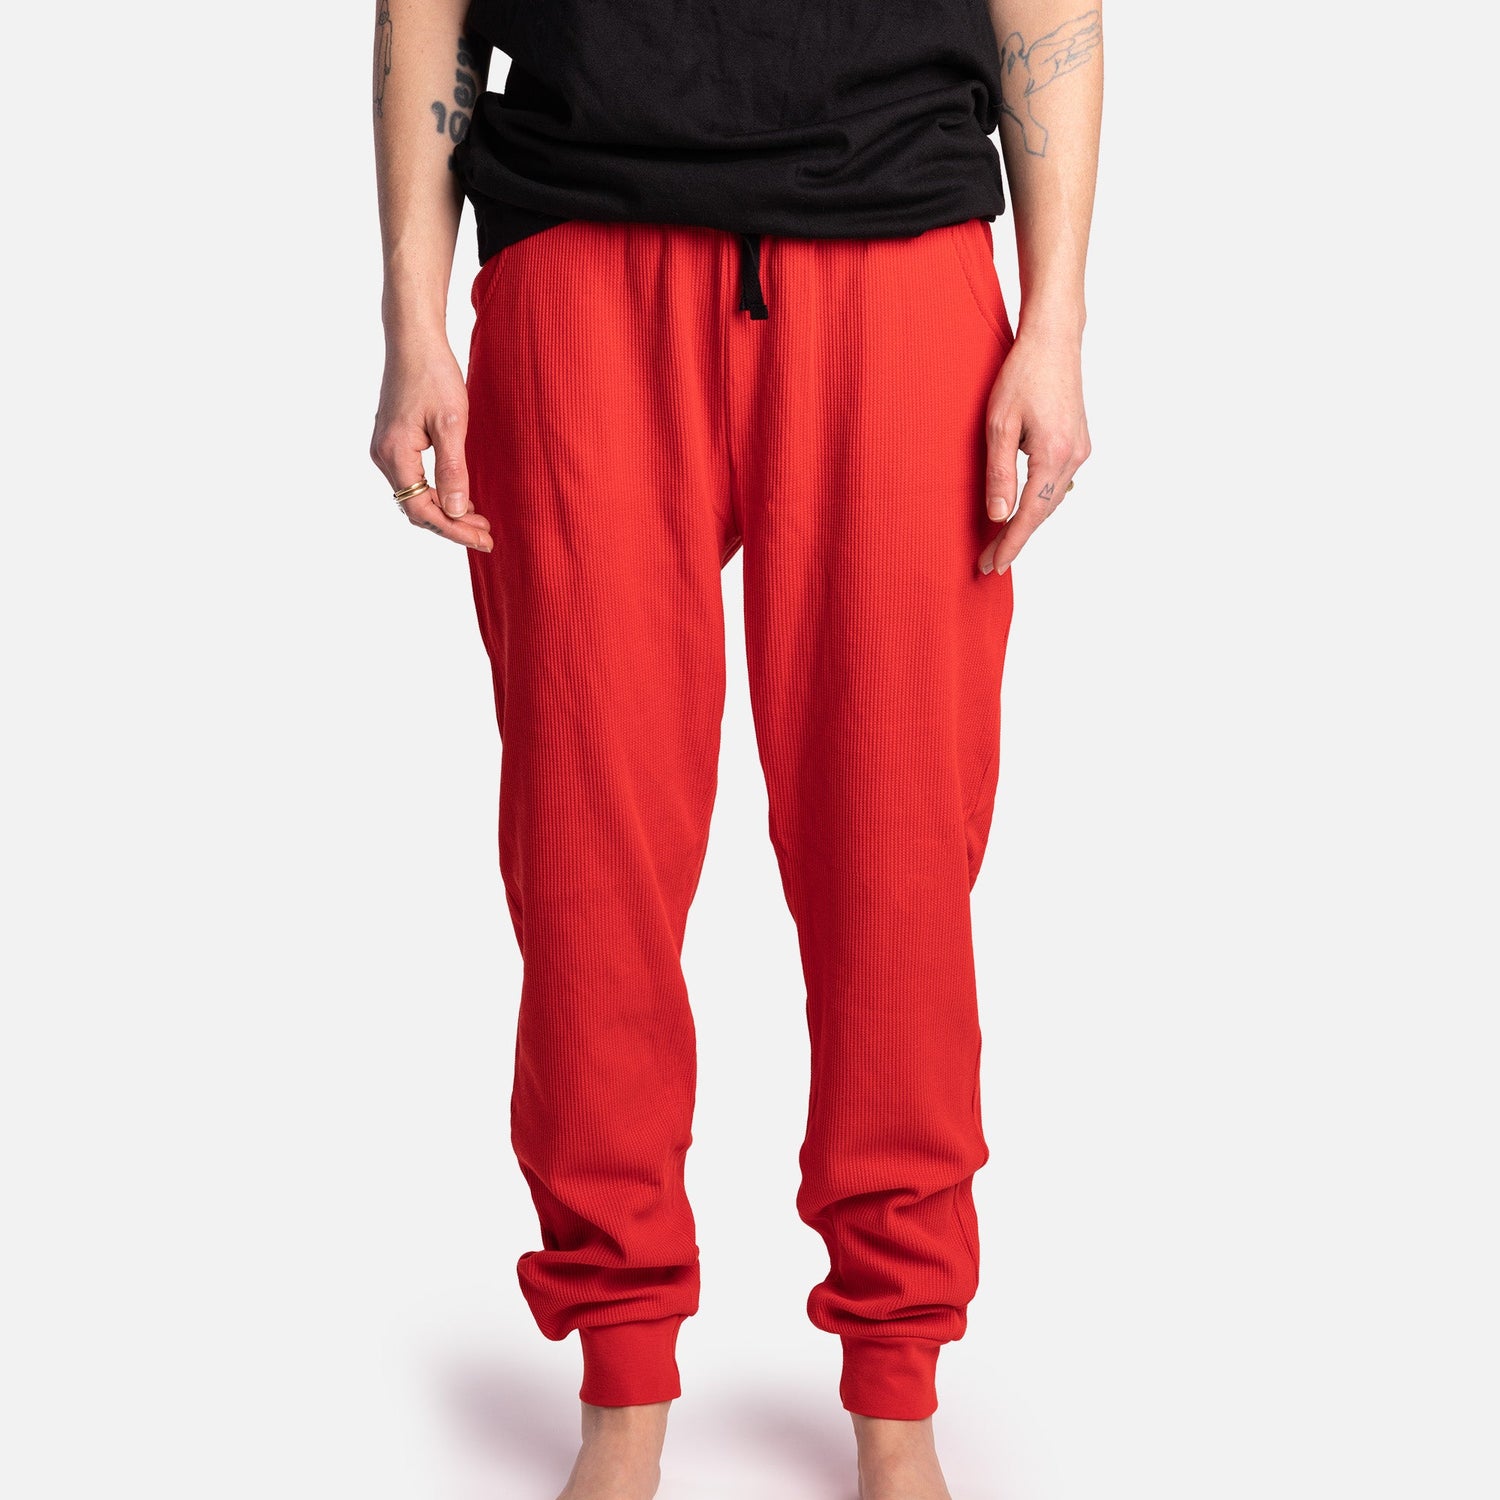 Matching Human & Dog Thermal Pajama - Red - Silver Paw